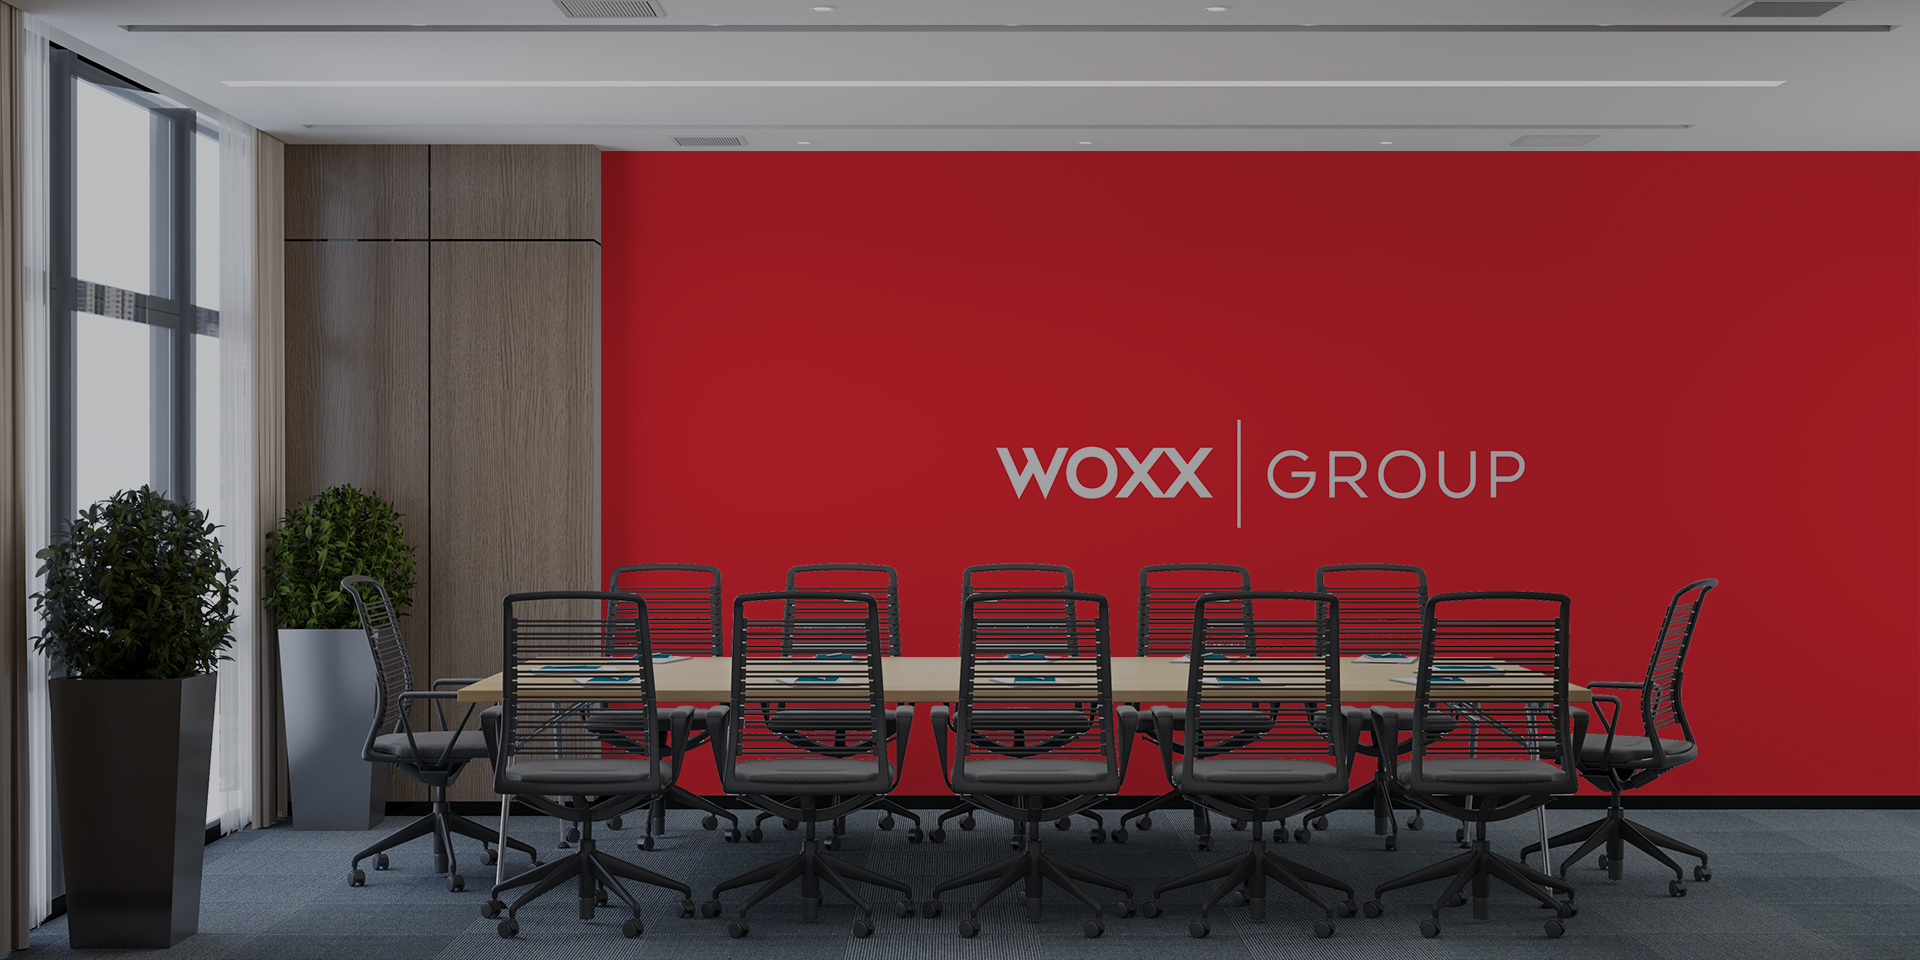 Woxx Group Ana Görsel